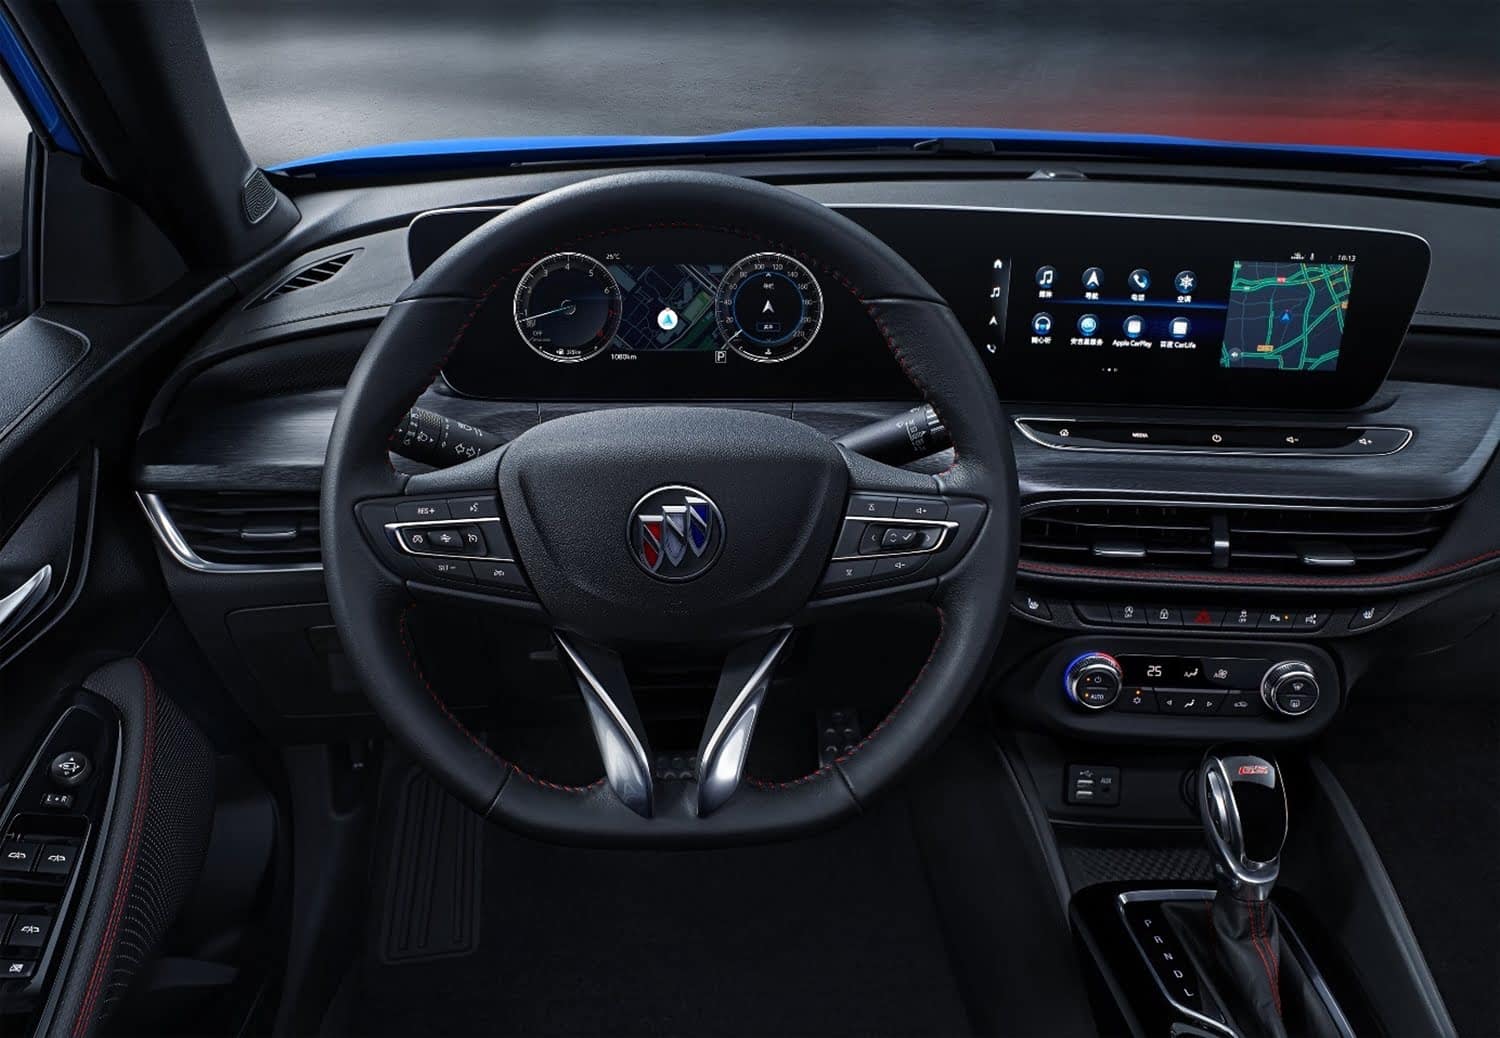 New 2022 Buick Verano Pro Interior is Impressive